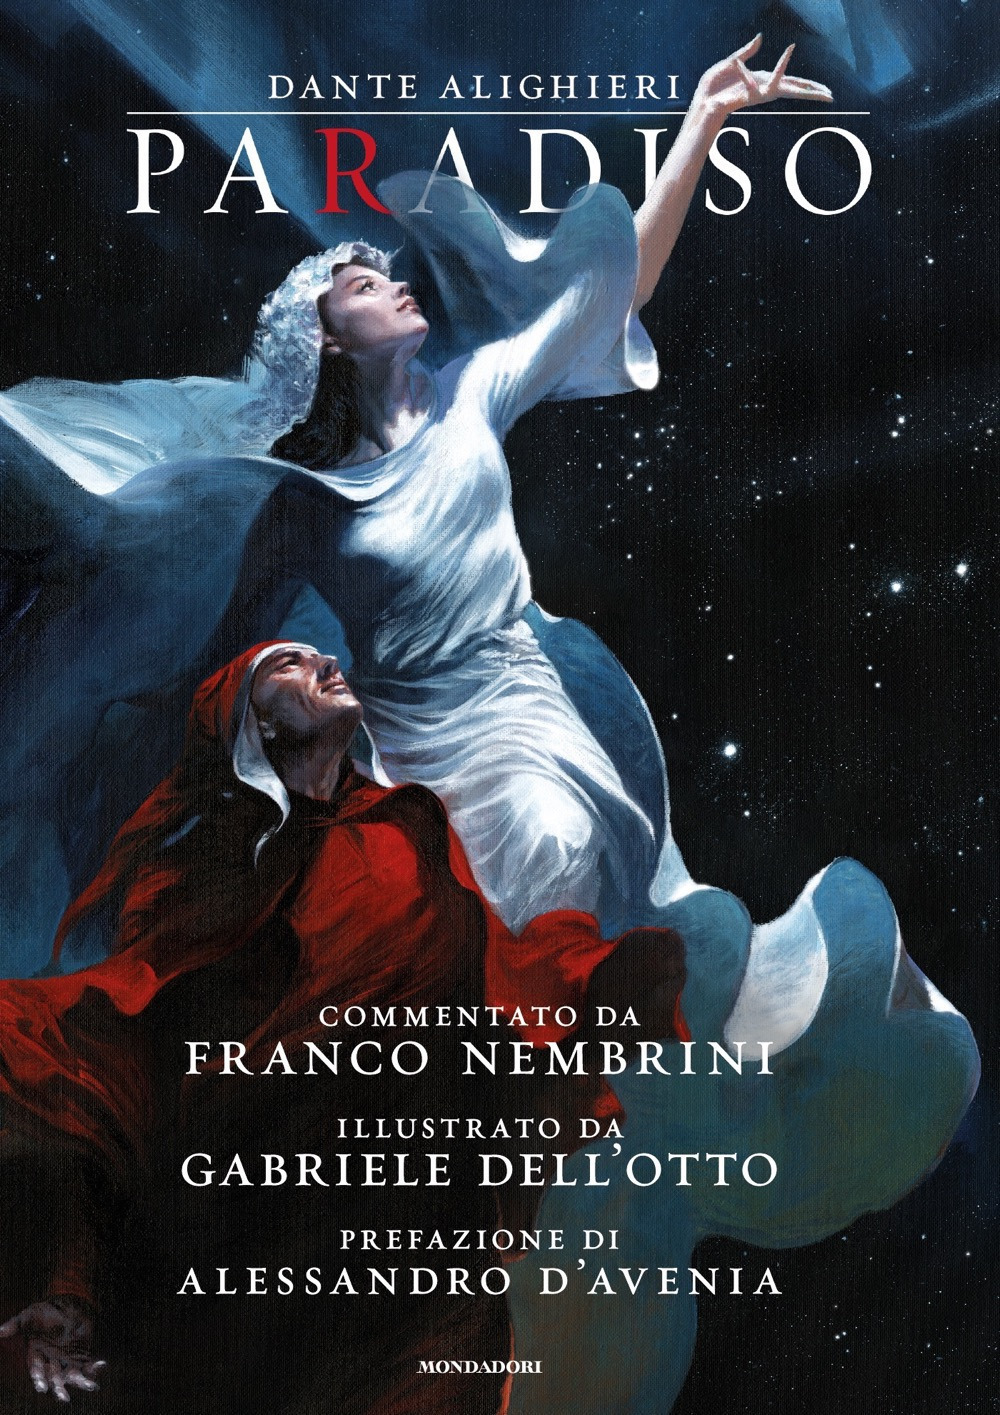 Libri Dante Alighieri - Paradiso NUOVO SIGILLATO, EDIZIONE DEL 31/08/2021 SUBITO DISPONIBILE